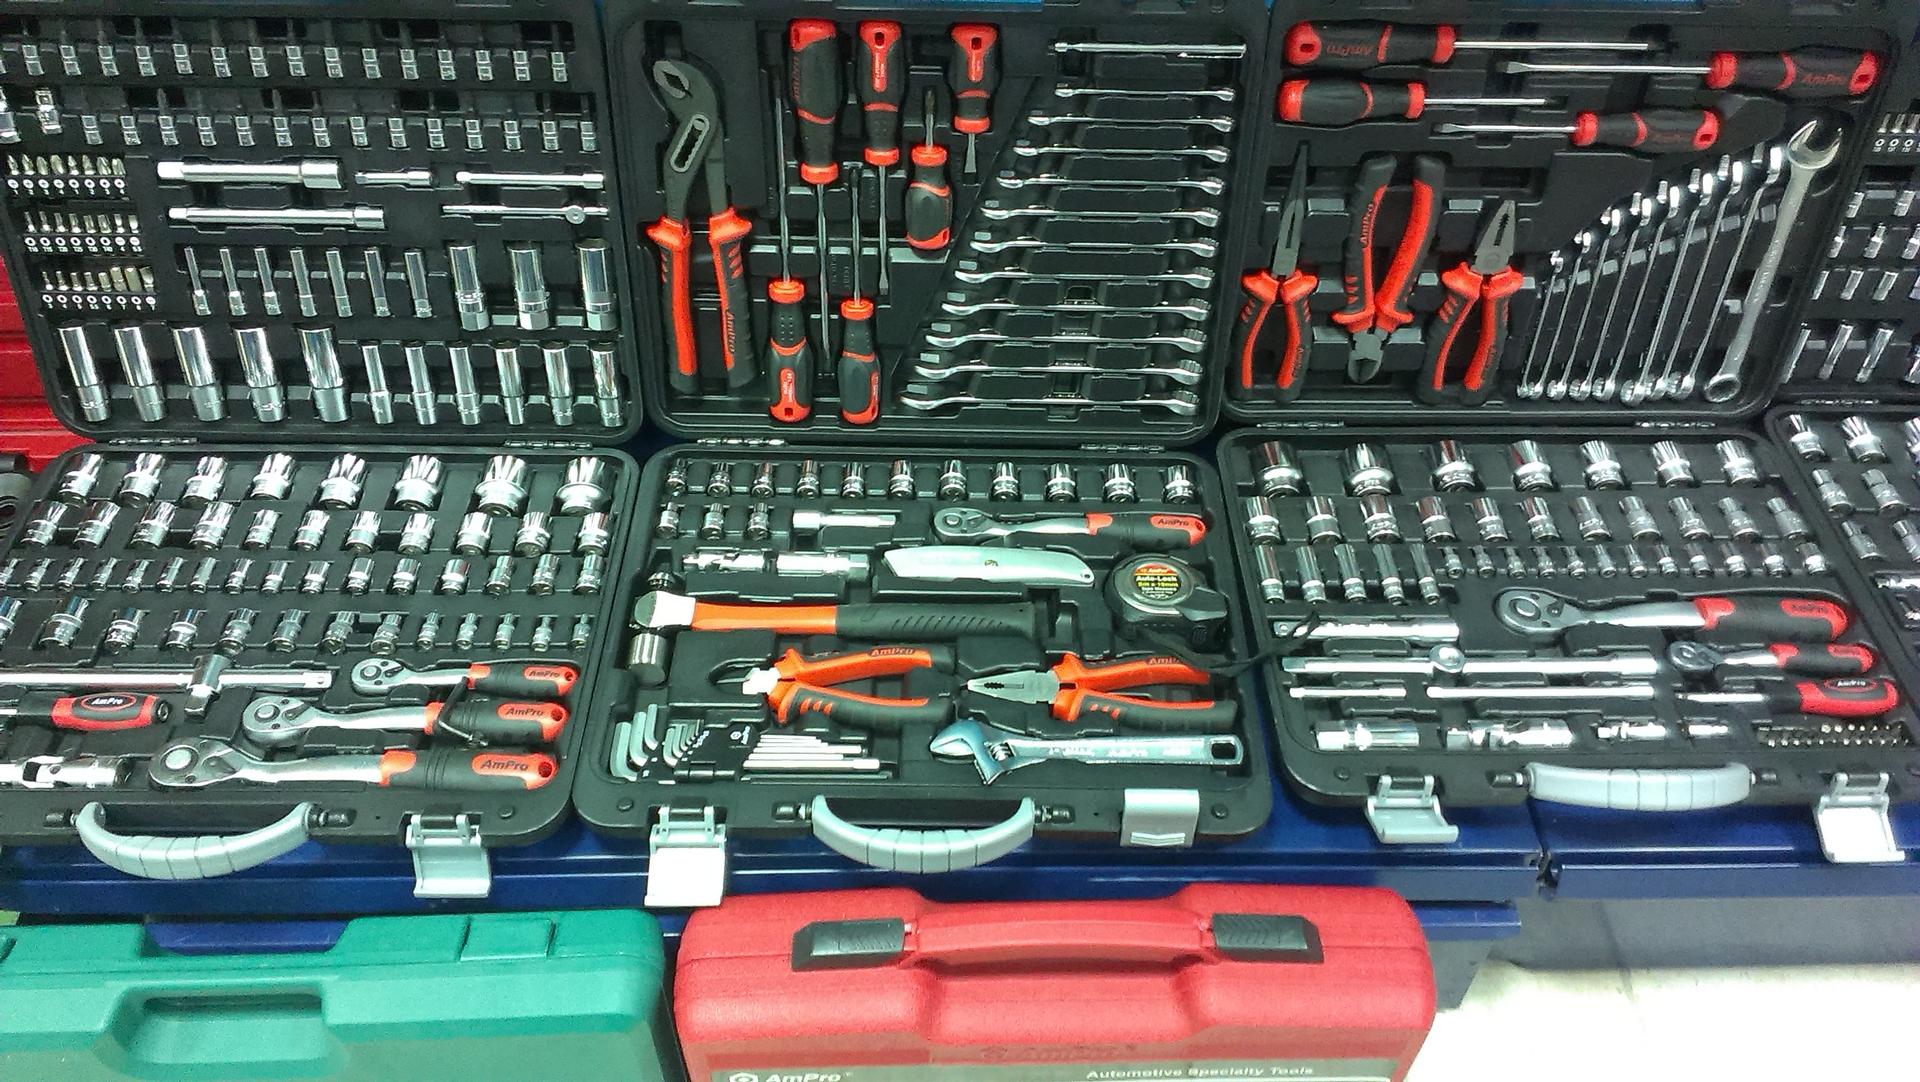 Магазин нужного инструменты. Набор инструментов 13m04 Toolbox. Kraftool 27888. Автомастерская инструменты. Набор инструментов для гаража профессиональный.